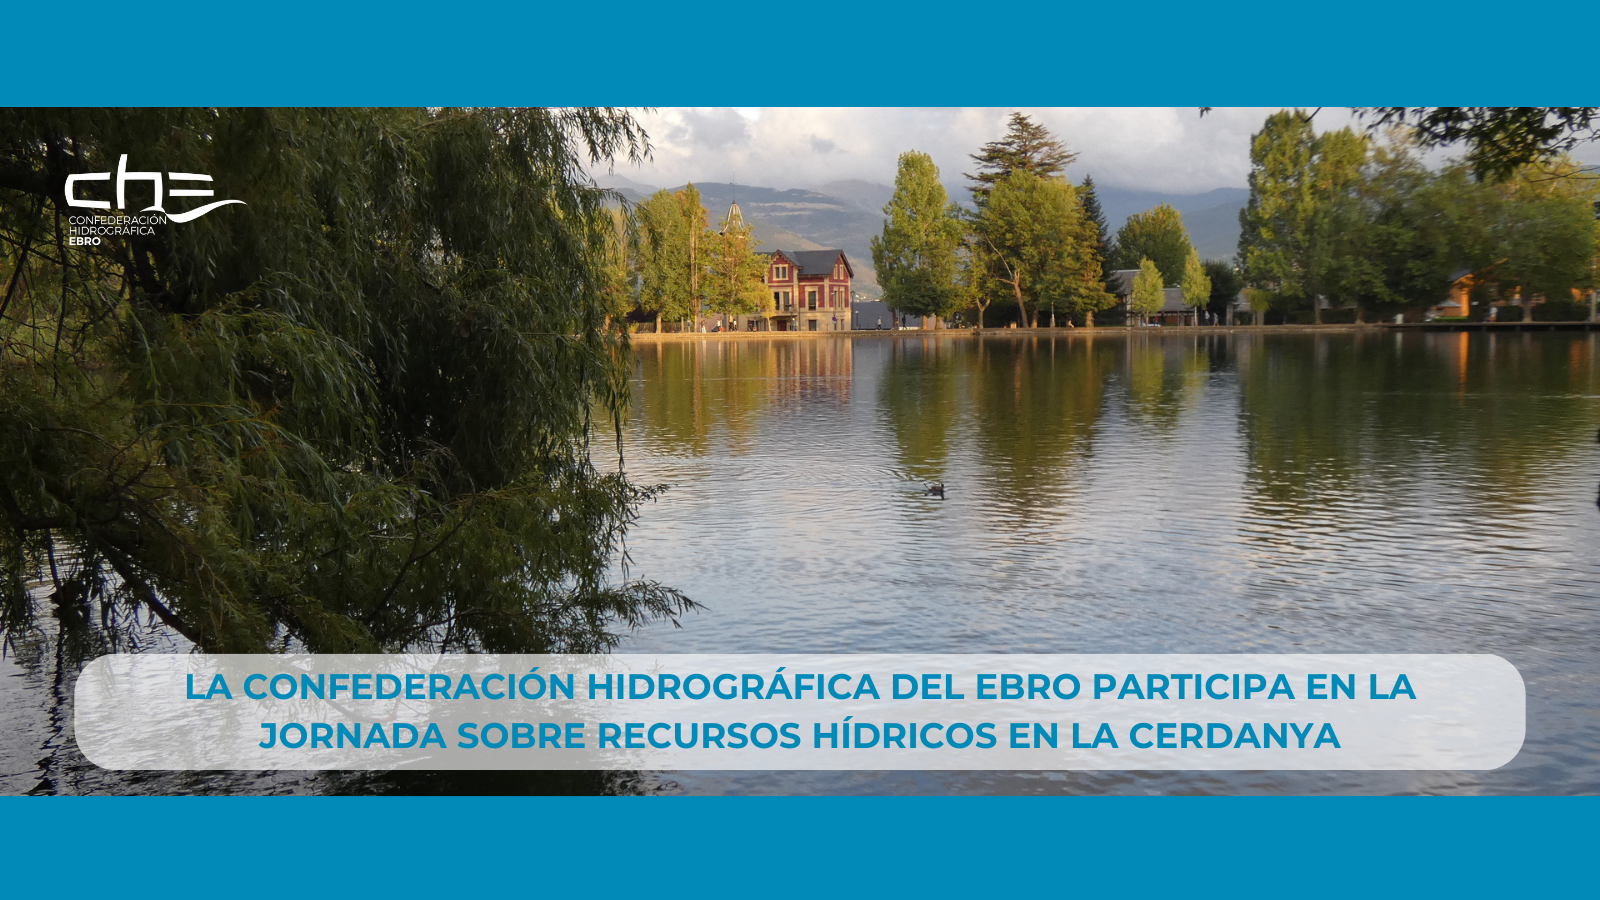 Imagen noticia - La Confederación Hidrográfica del Ebro participa en la jornada sobre recursos hídricos en La Cerdanya